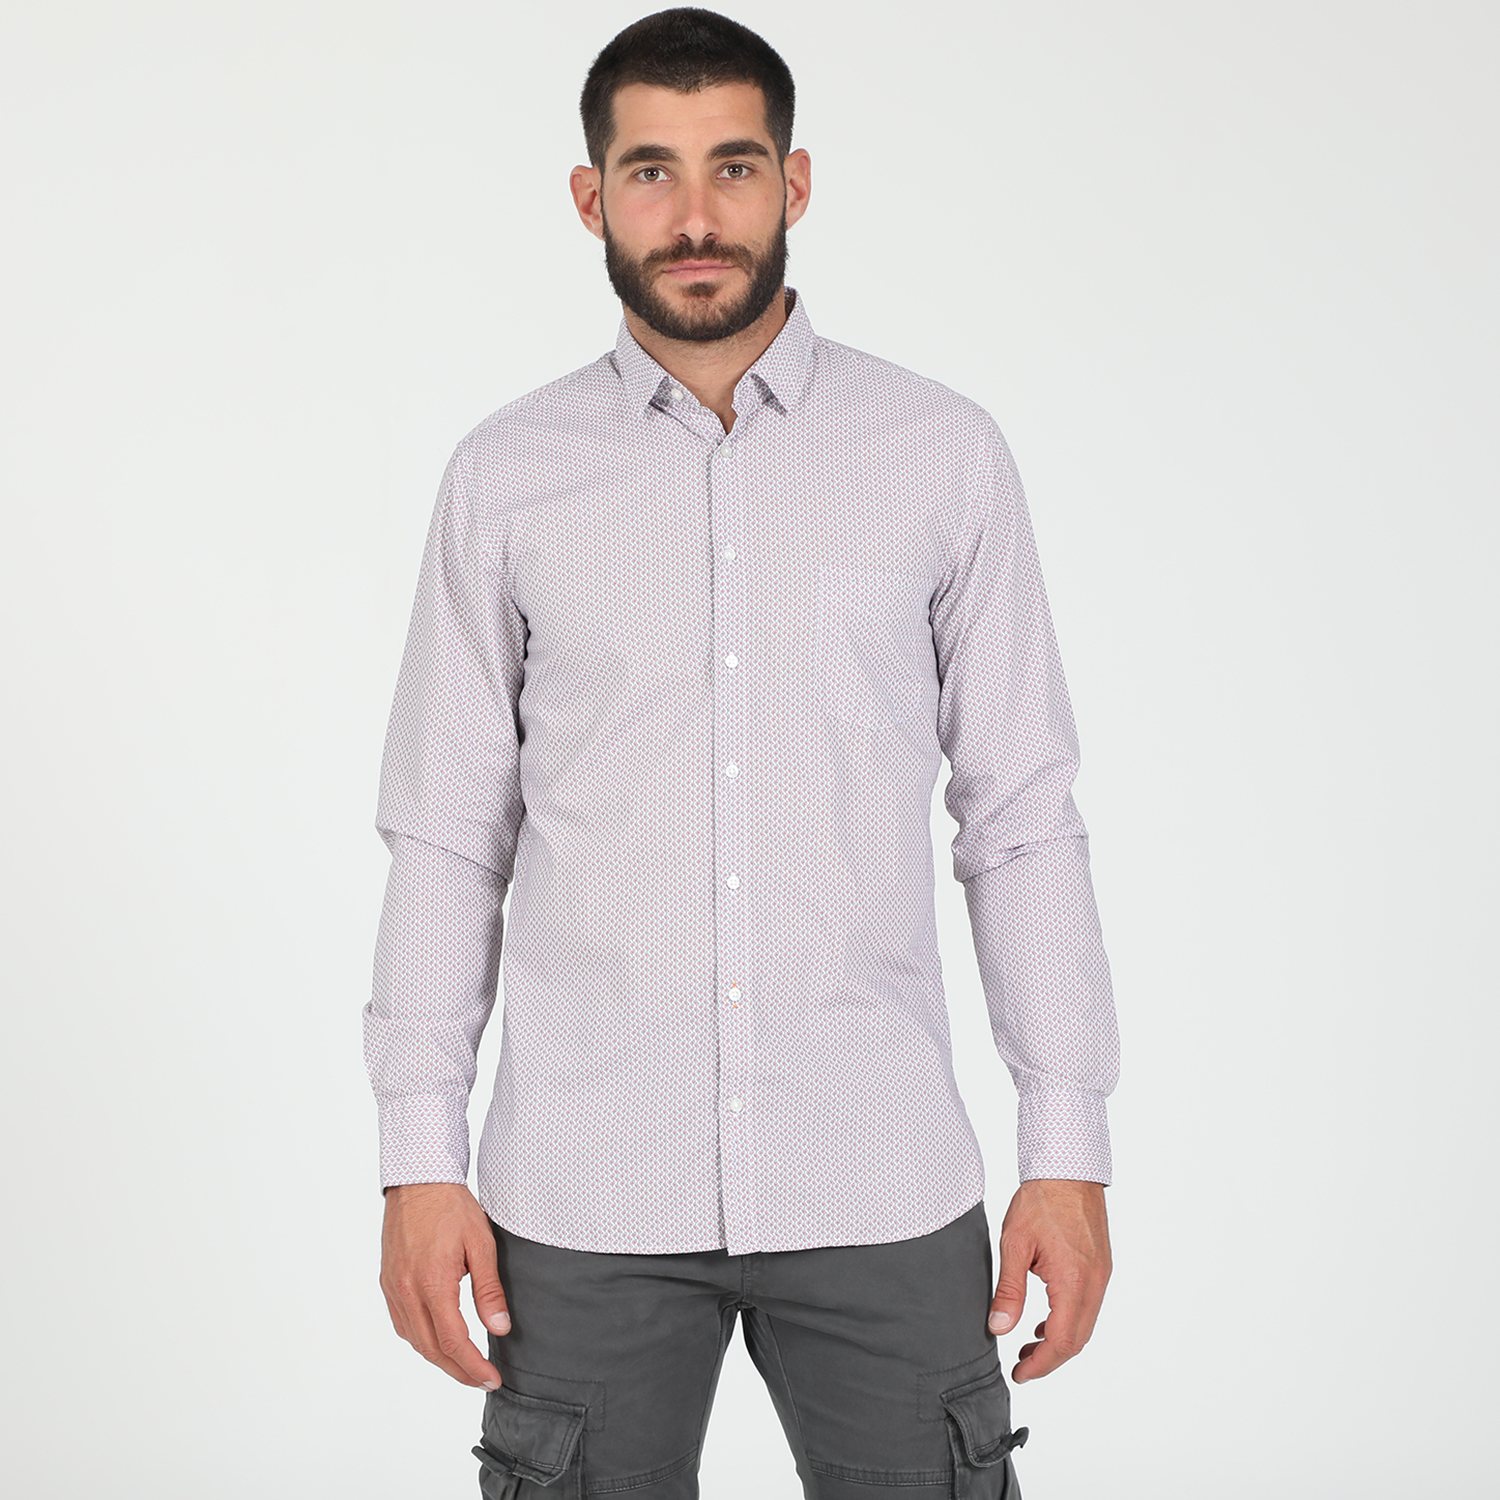 Ανδρικά/Ρούχα/Πουκάμισα/Μακρυμάνικα BOSS - Ανδρικό πουκάμισο BOSS Casual Magneton μπλε λευκό